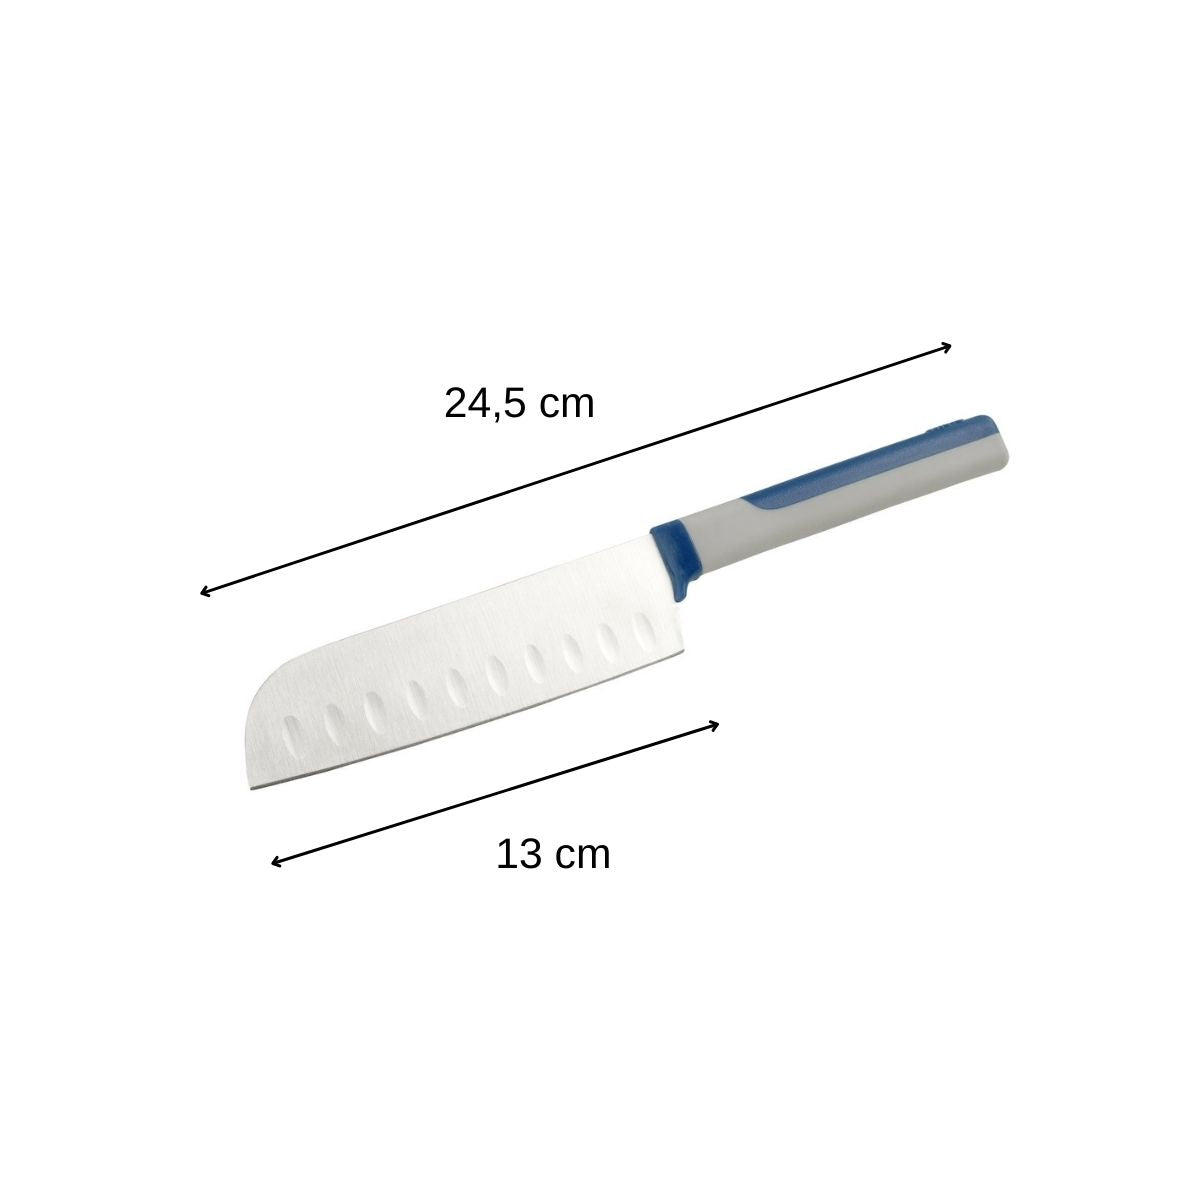 Petit couteau Santoku 24,5 cm Tasty Core